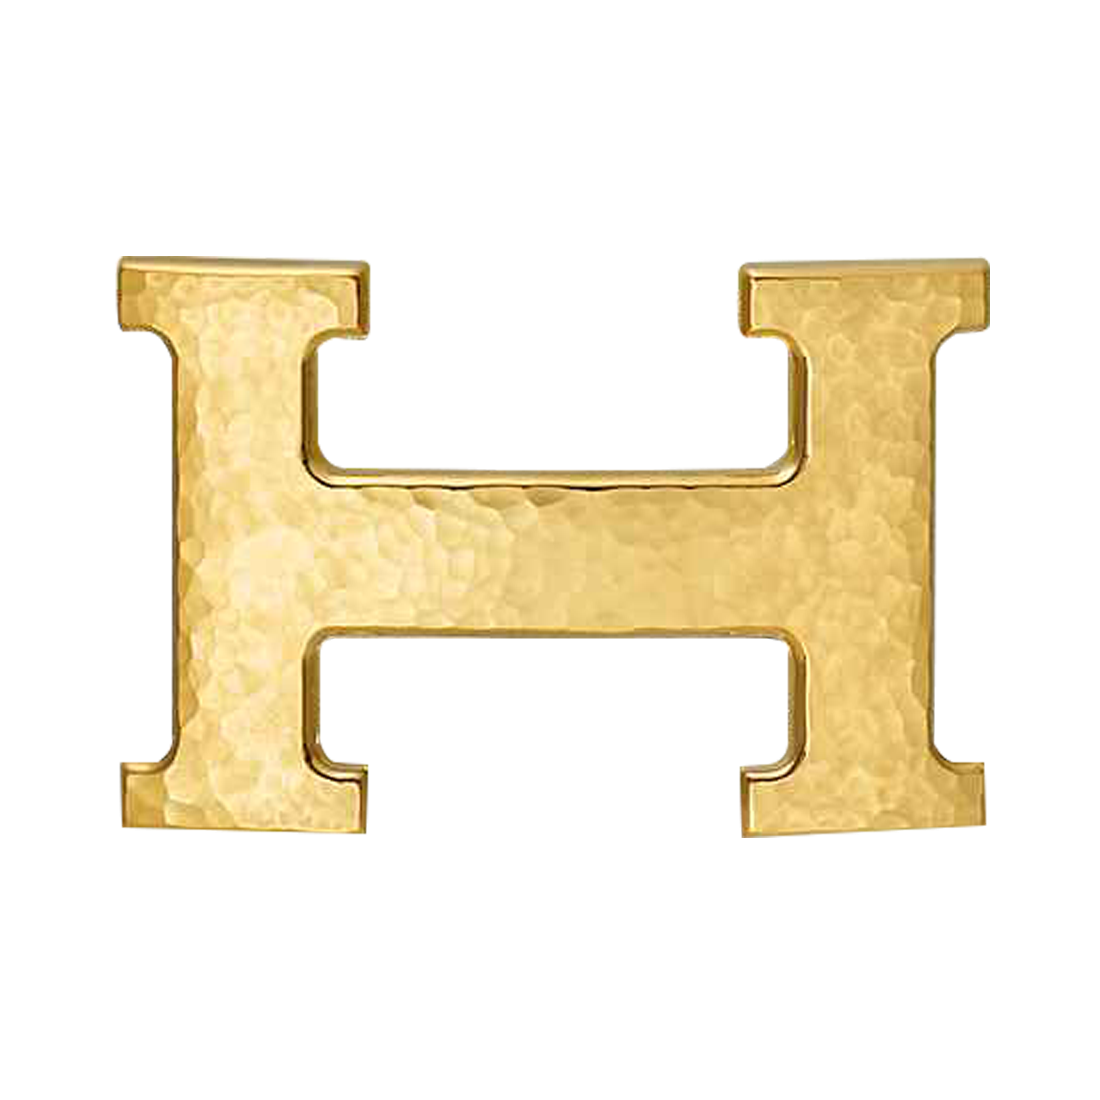 Mặt khóa dây lưng Hermes 2 mặt mã hiệu H064549CC06